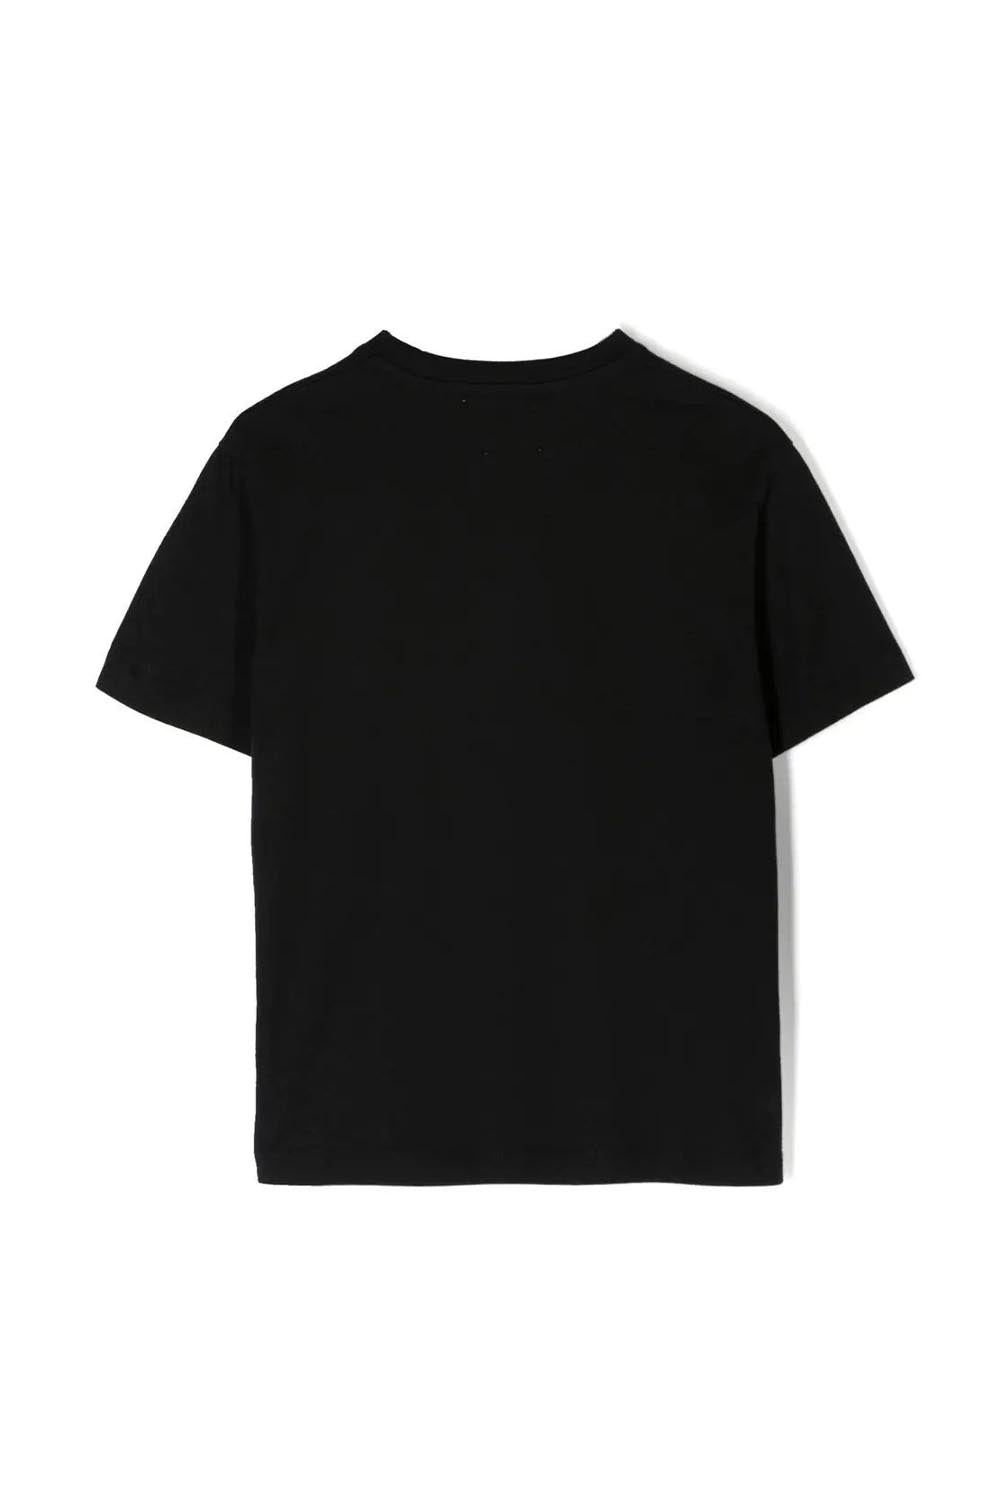 Monsterlisa T-Shirt Short Sleeve